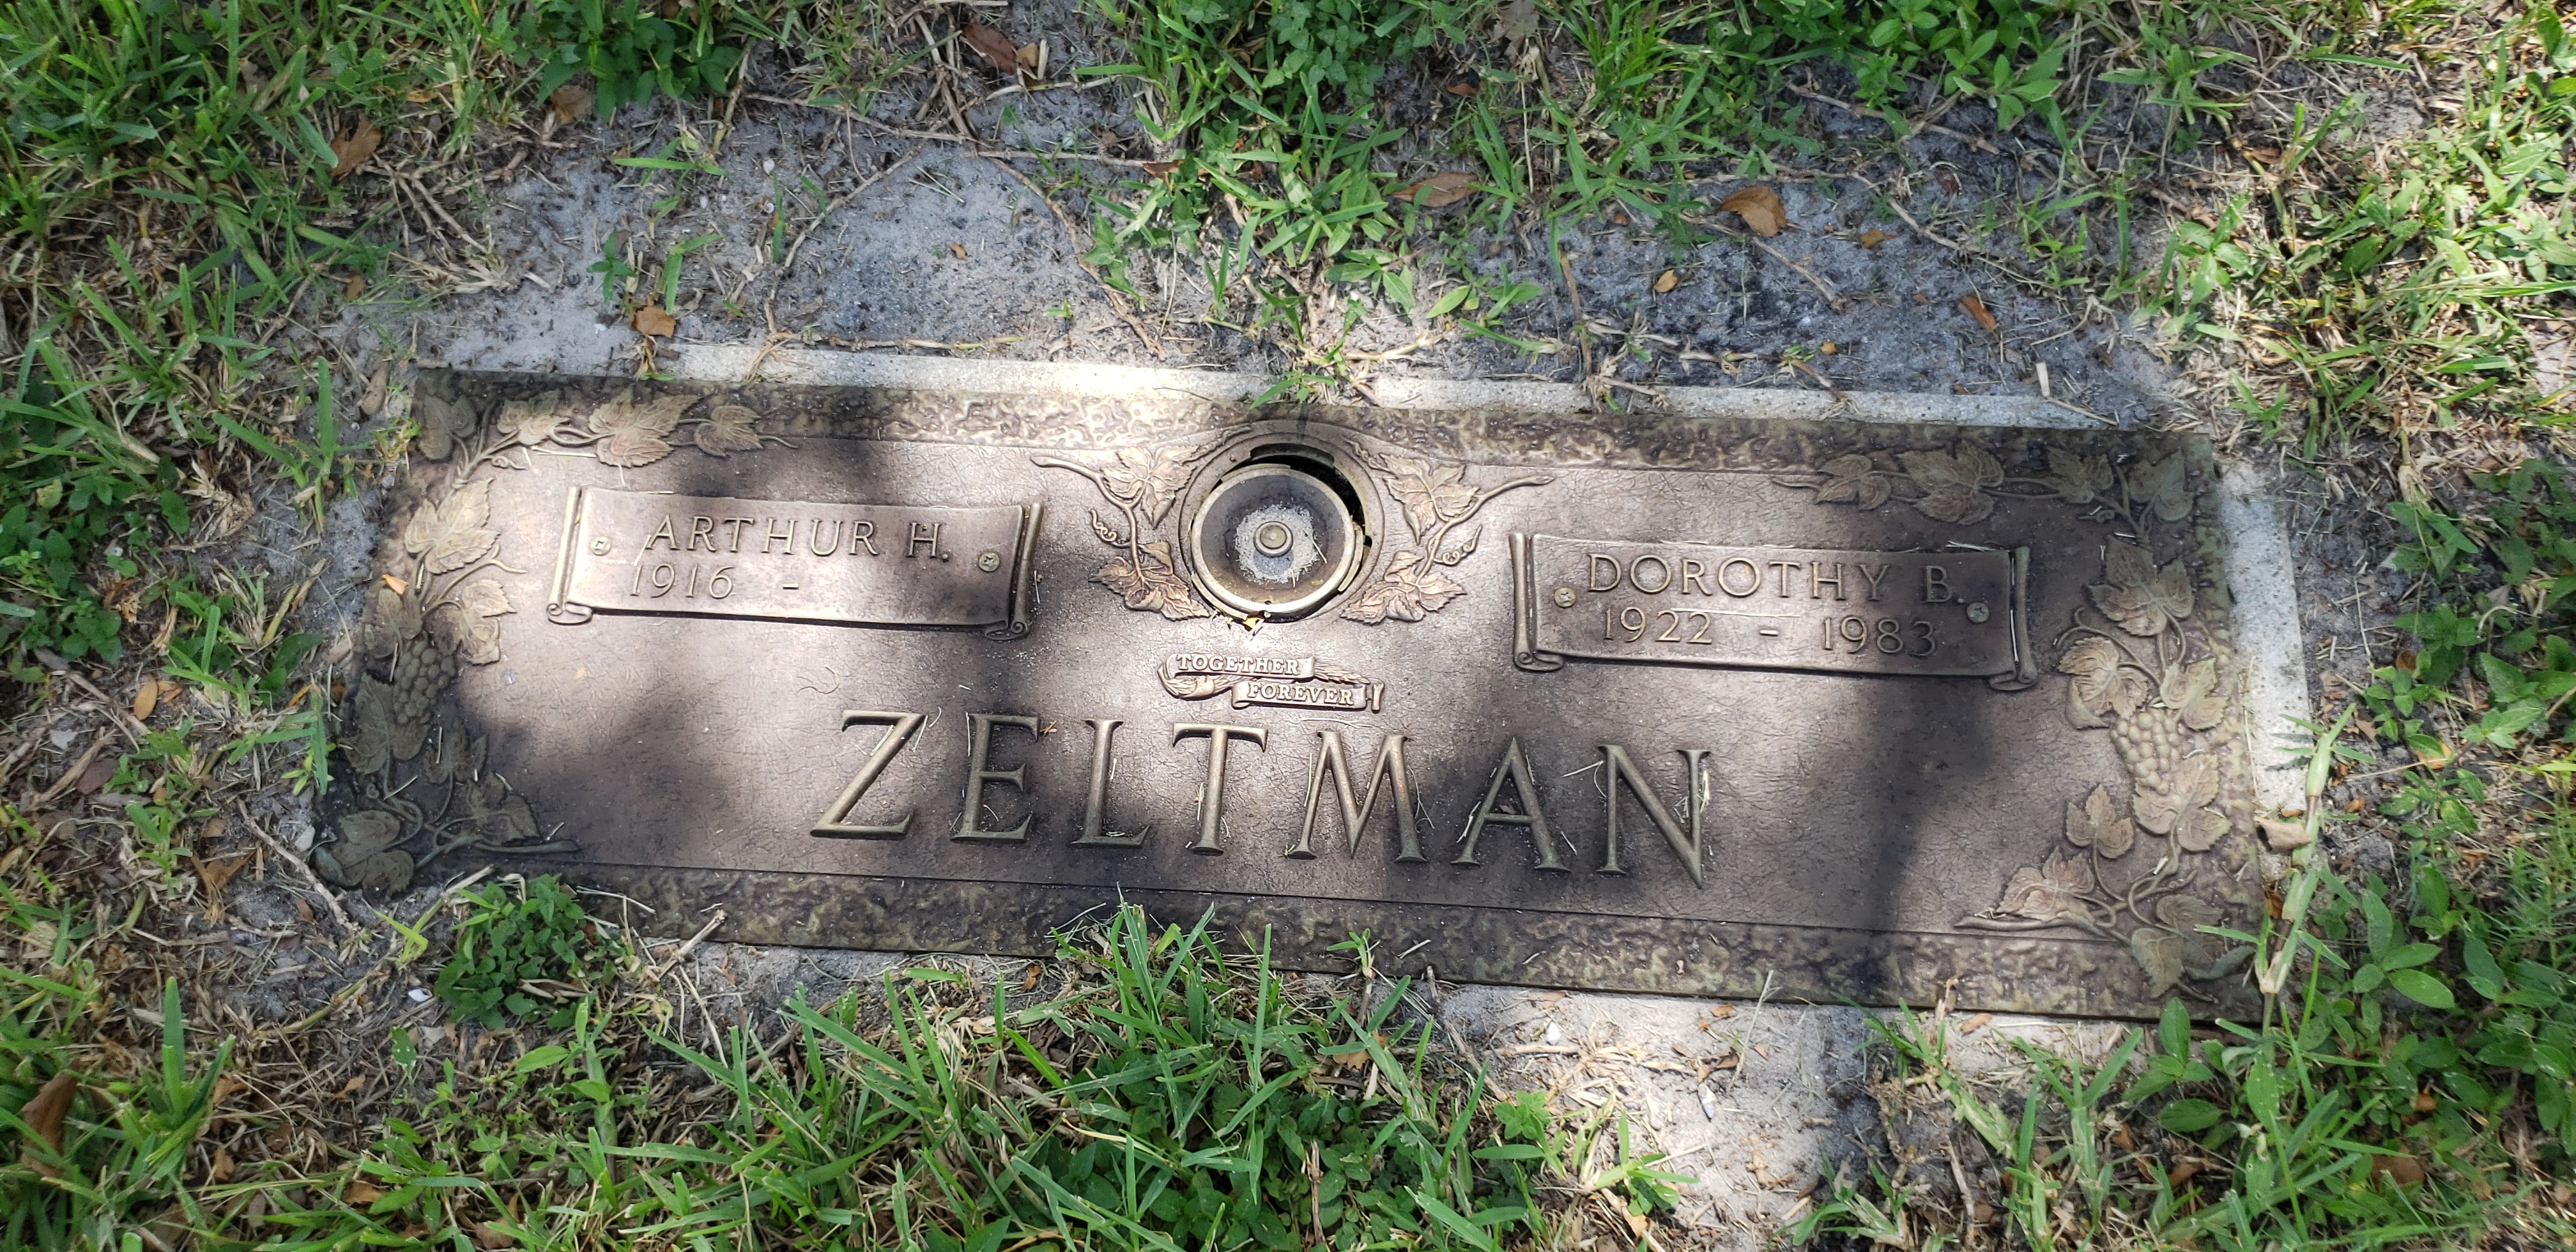 Arthur H Zeltman